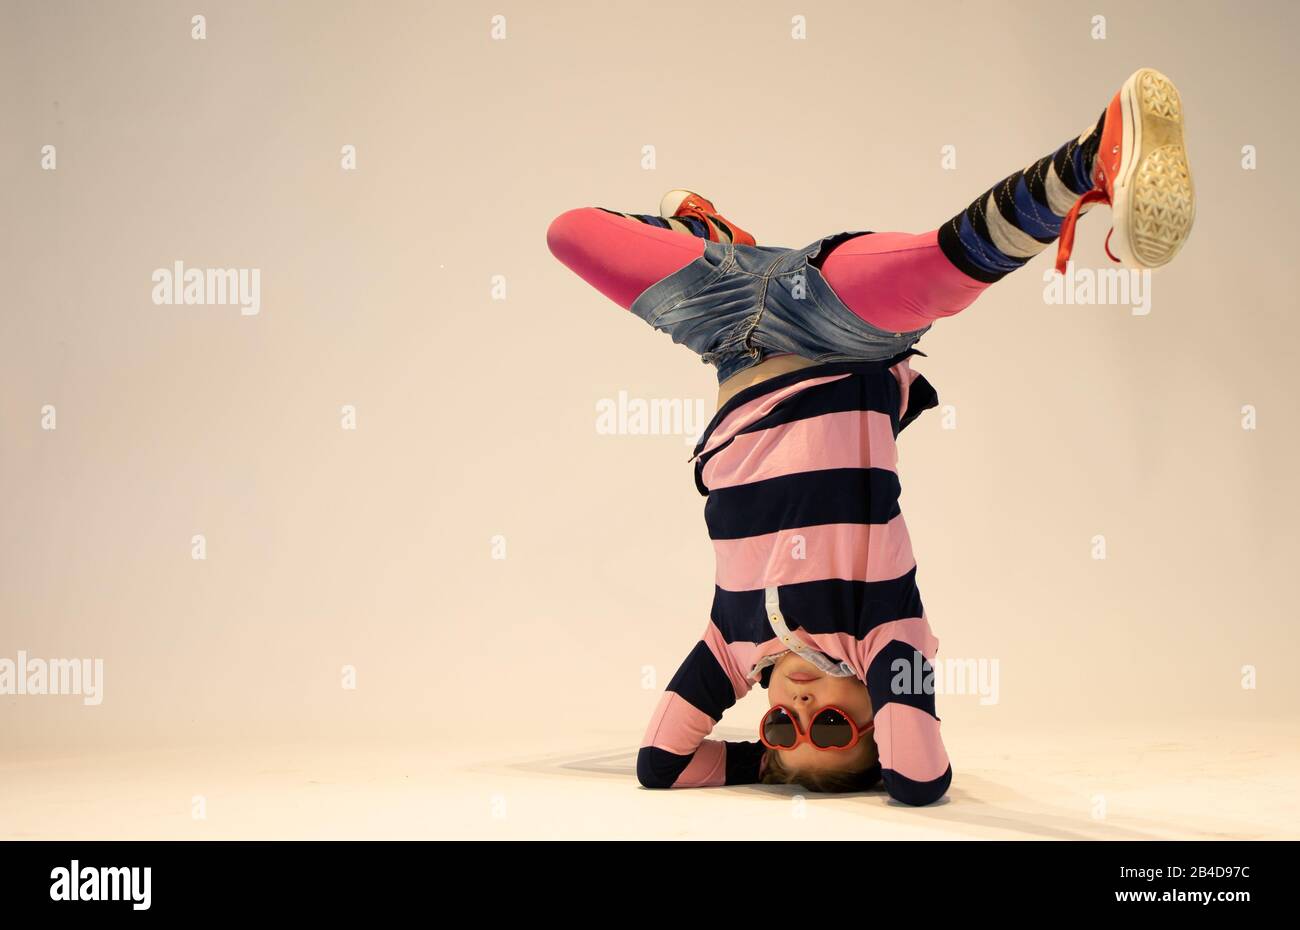 Mädchen in einer einzigartigen Breakdance-Position, einzigartiges Kind, verrücktes Mädchen, cooles Mädchen Stockfoto